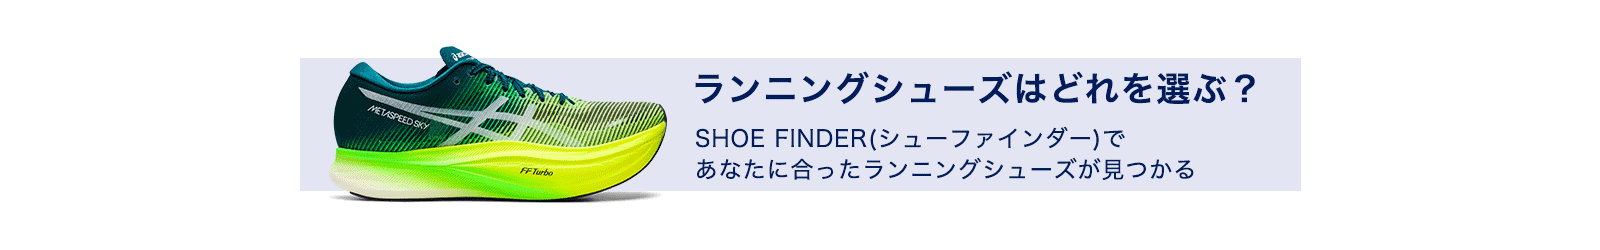 shoe finder banner